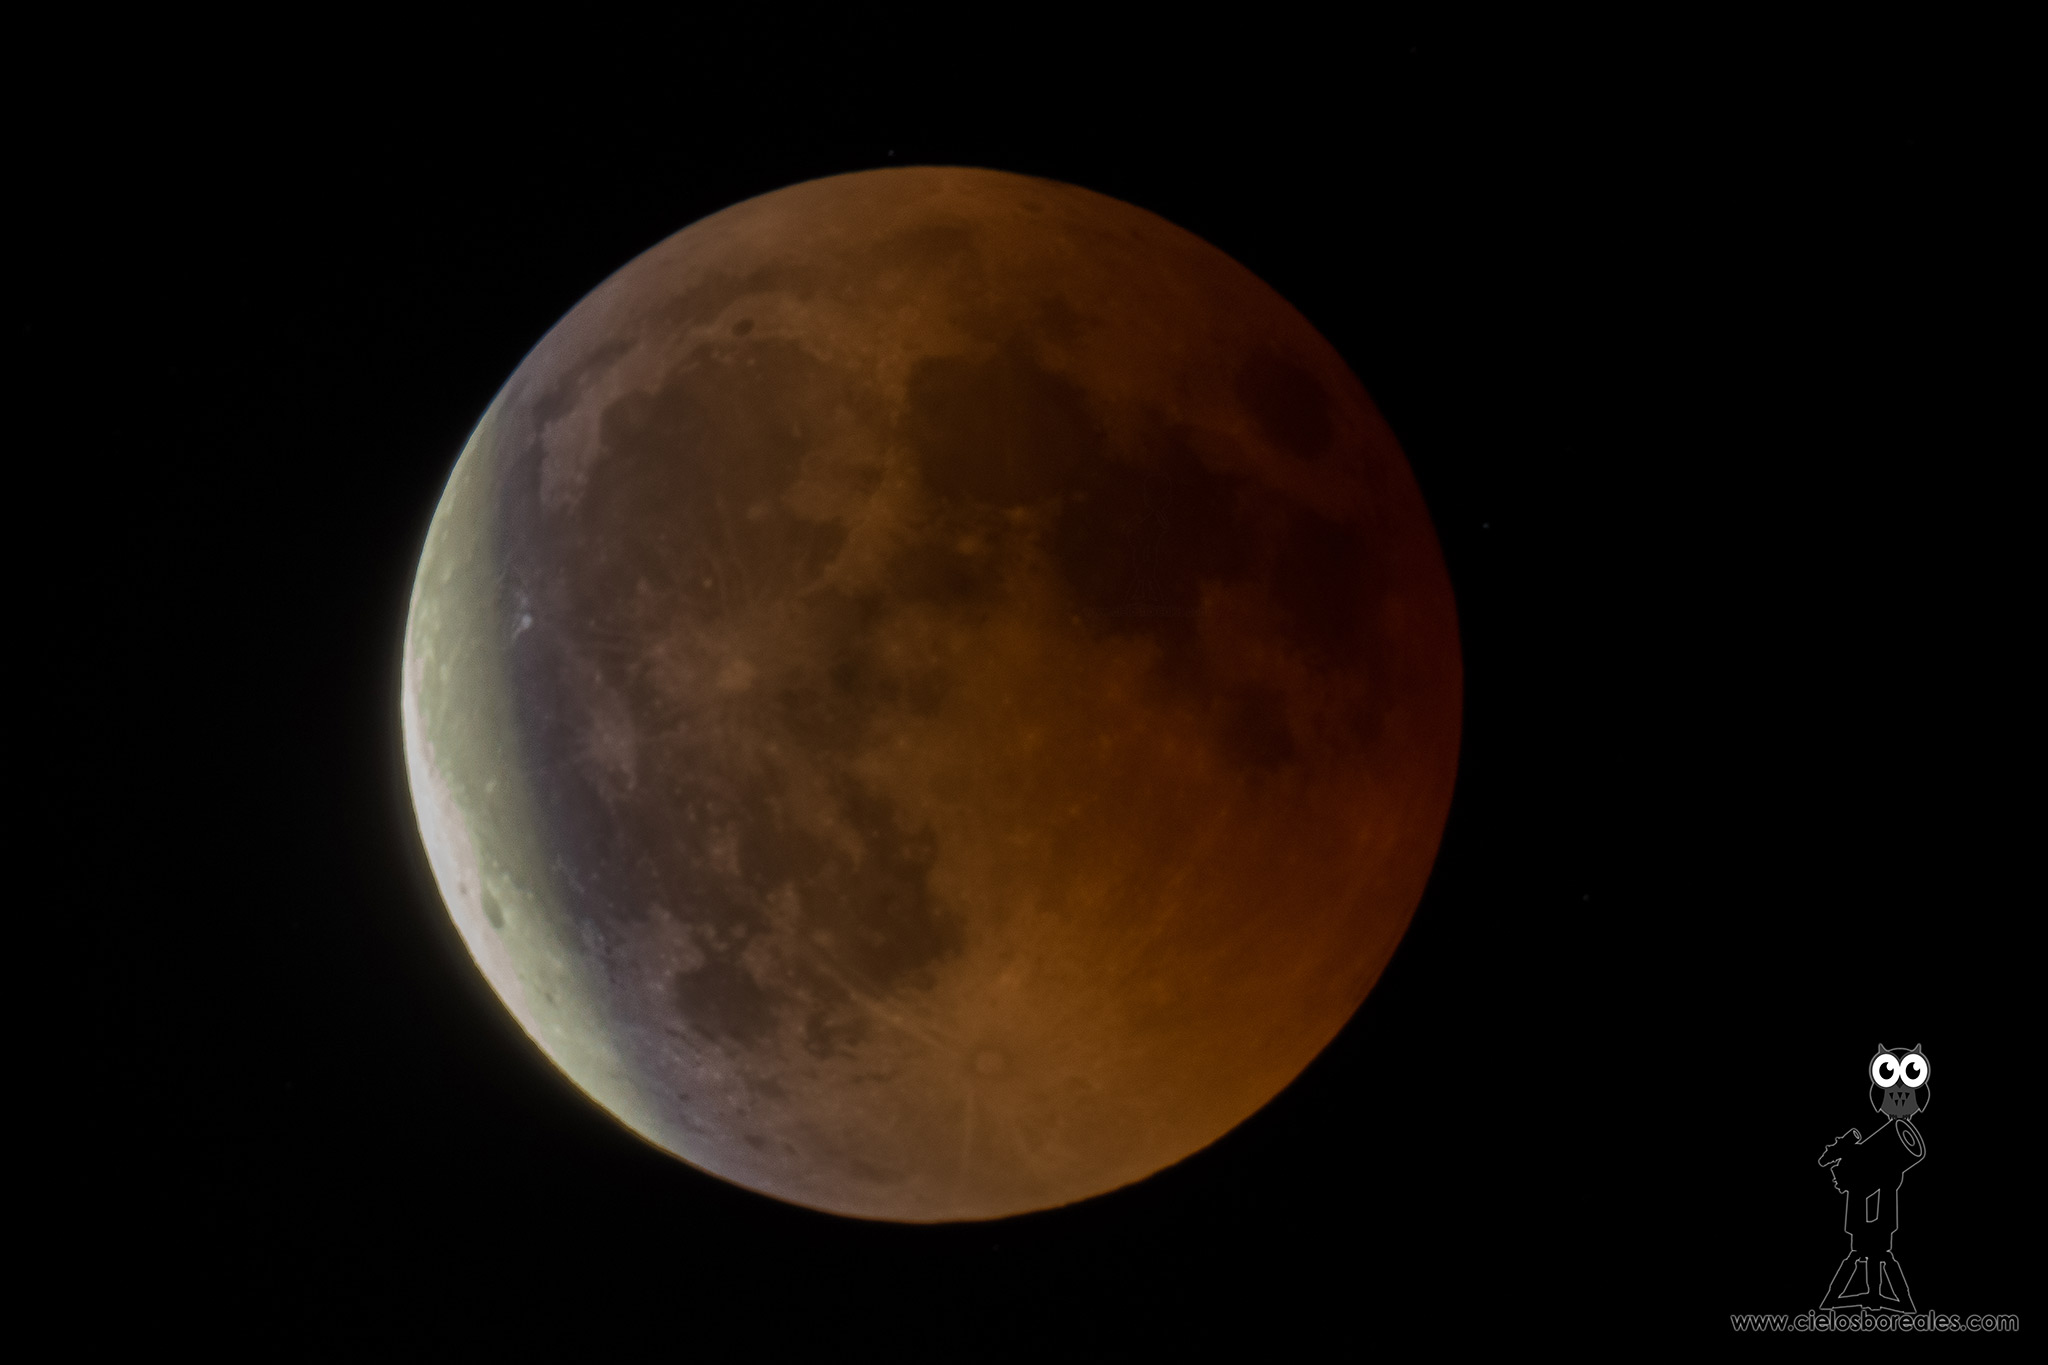 Imagen de un eclipse lunar con la línea azulada causada por el paso de la luz a través de la capa de ozono de la atmósfera terrestre.